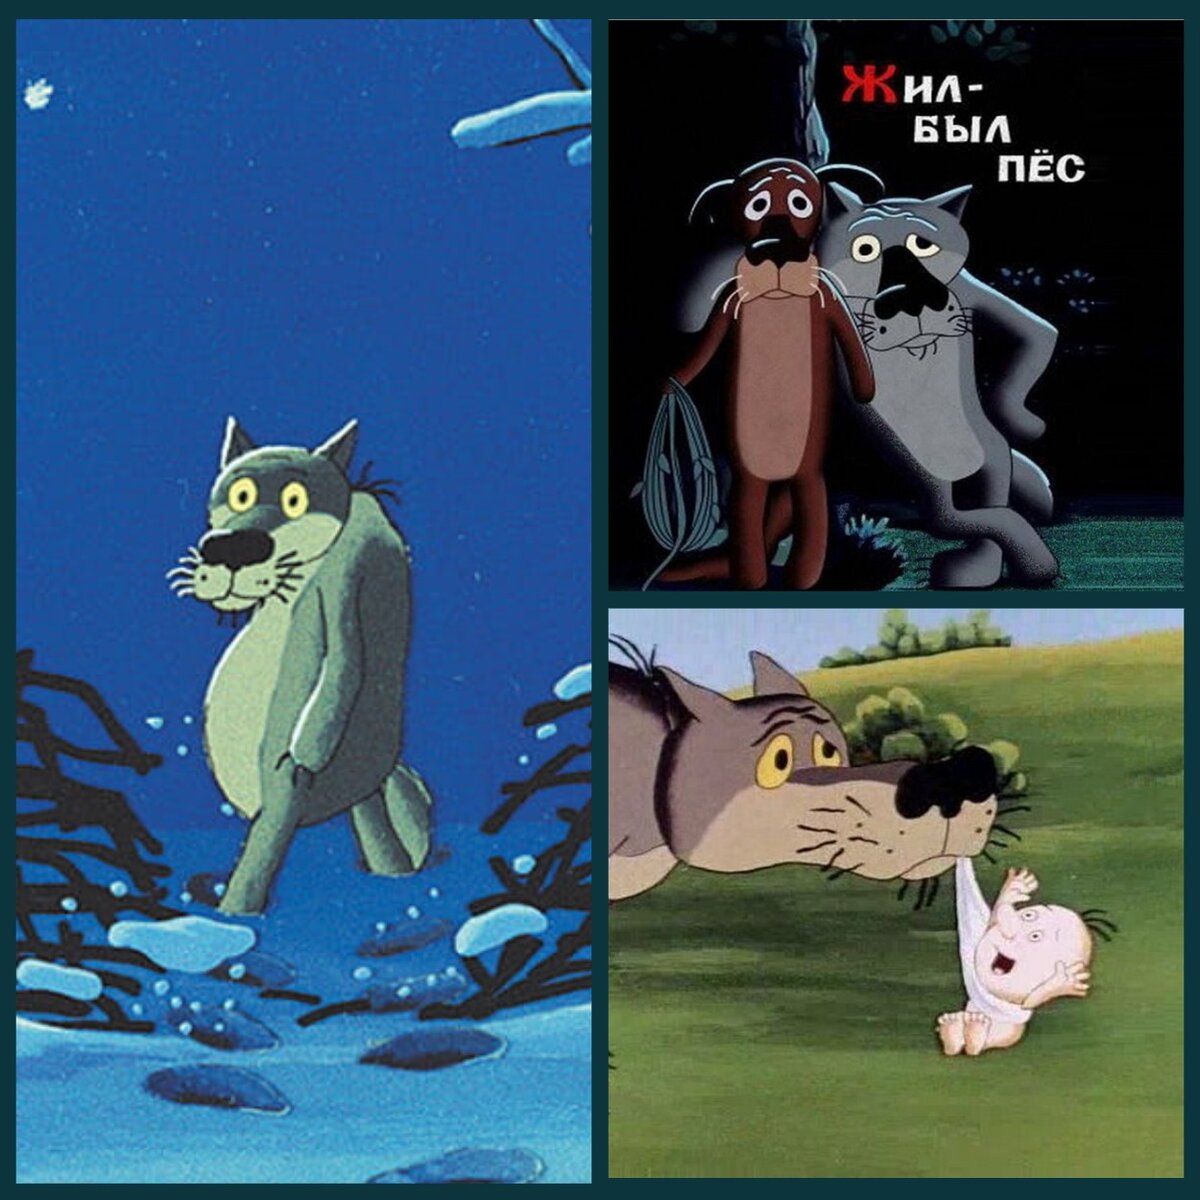 Эдуард Назаров снял мультфильм "Жил был пёс" по мотивам украинской народной сказки "Серко" в 1982 году.